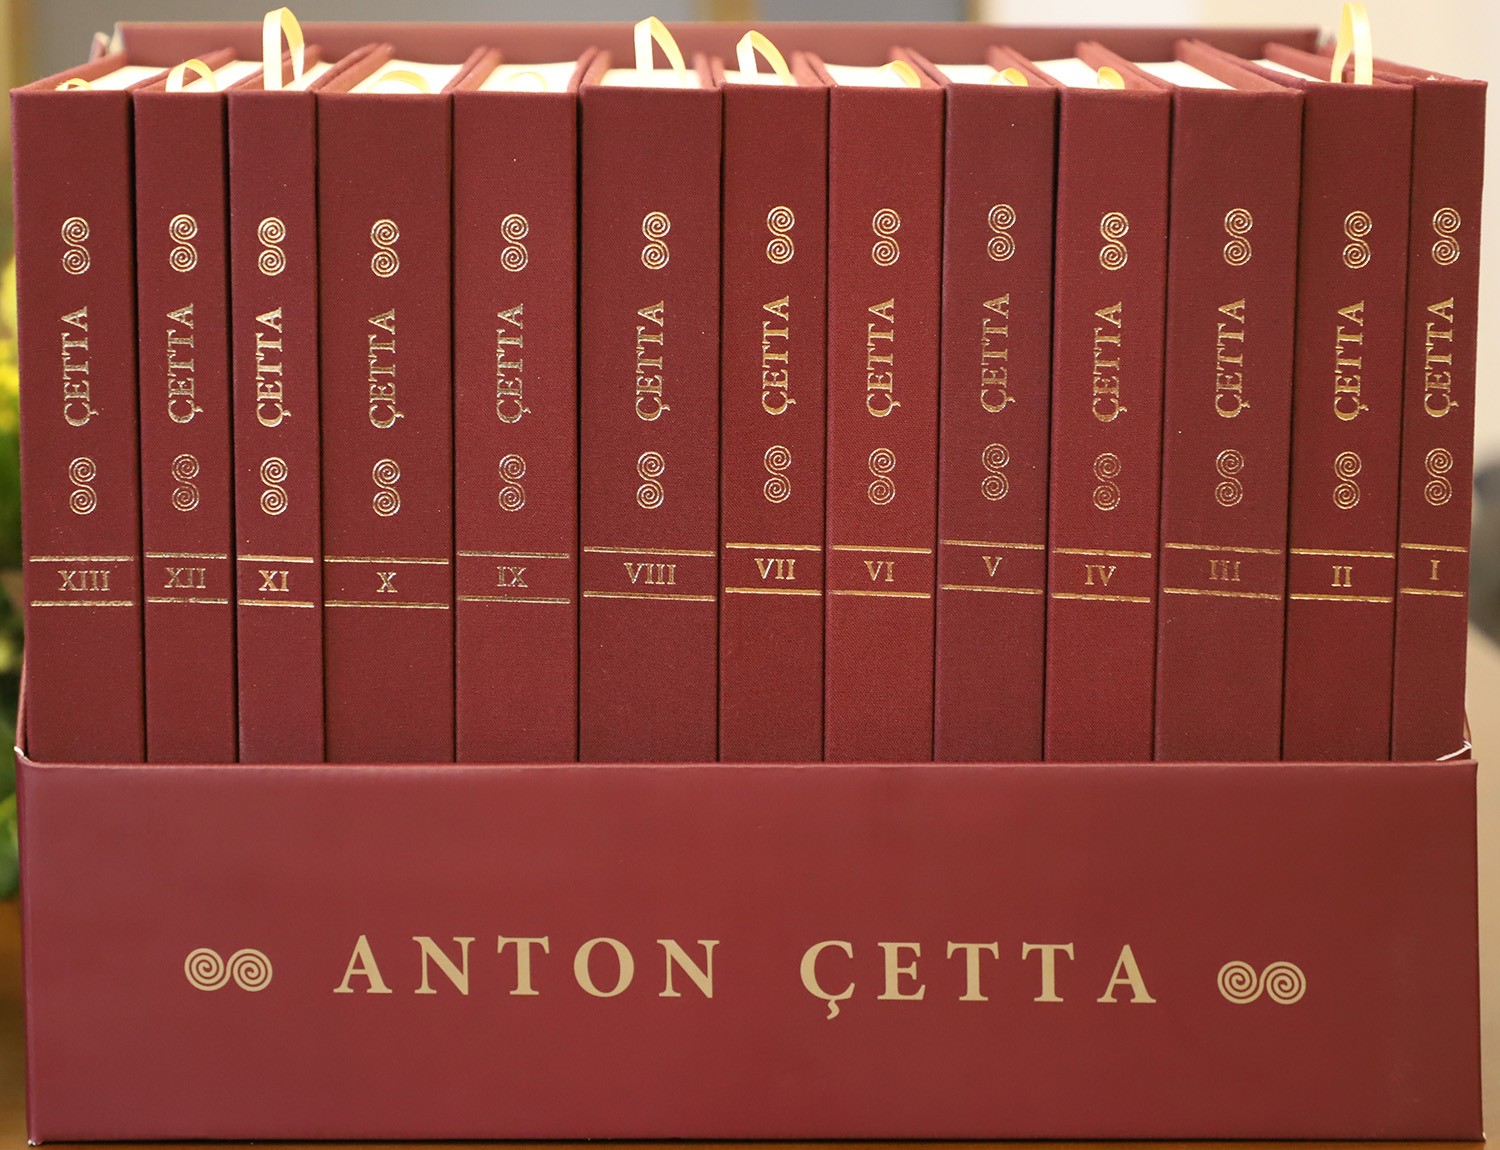 Botohet kompleti i veprave të Anton Çettës, në 25-vjetorin e tij të vdekjes